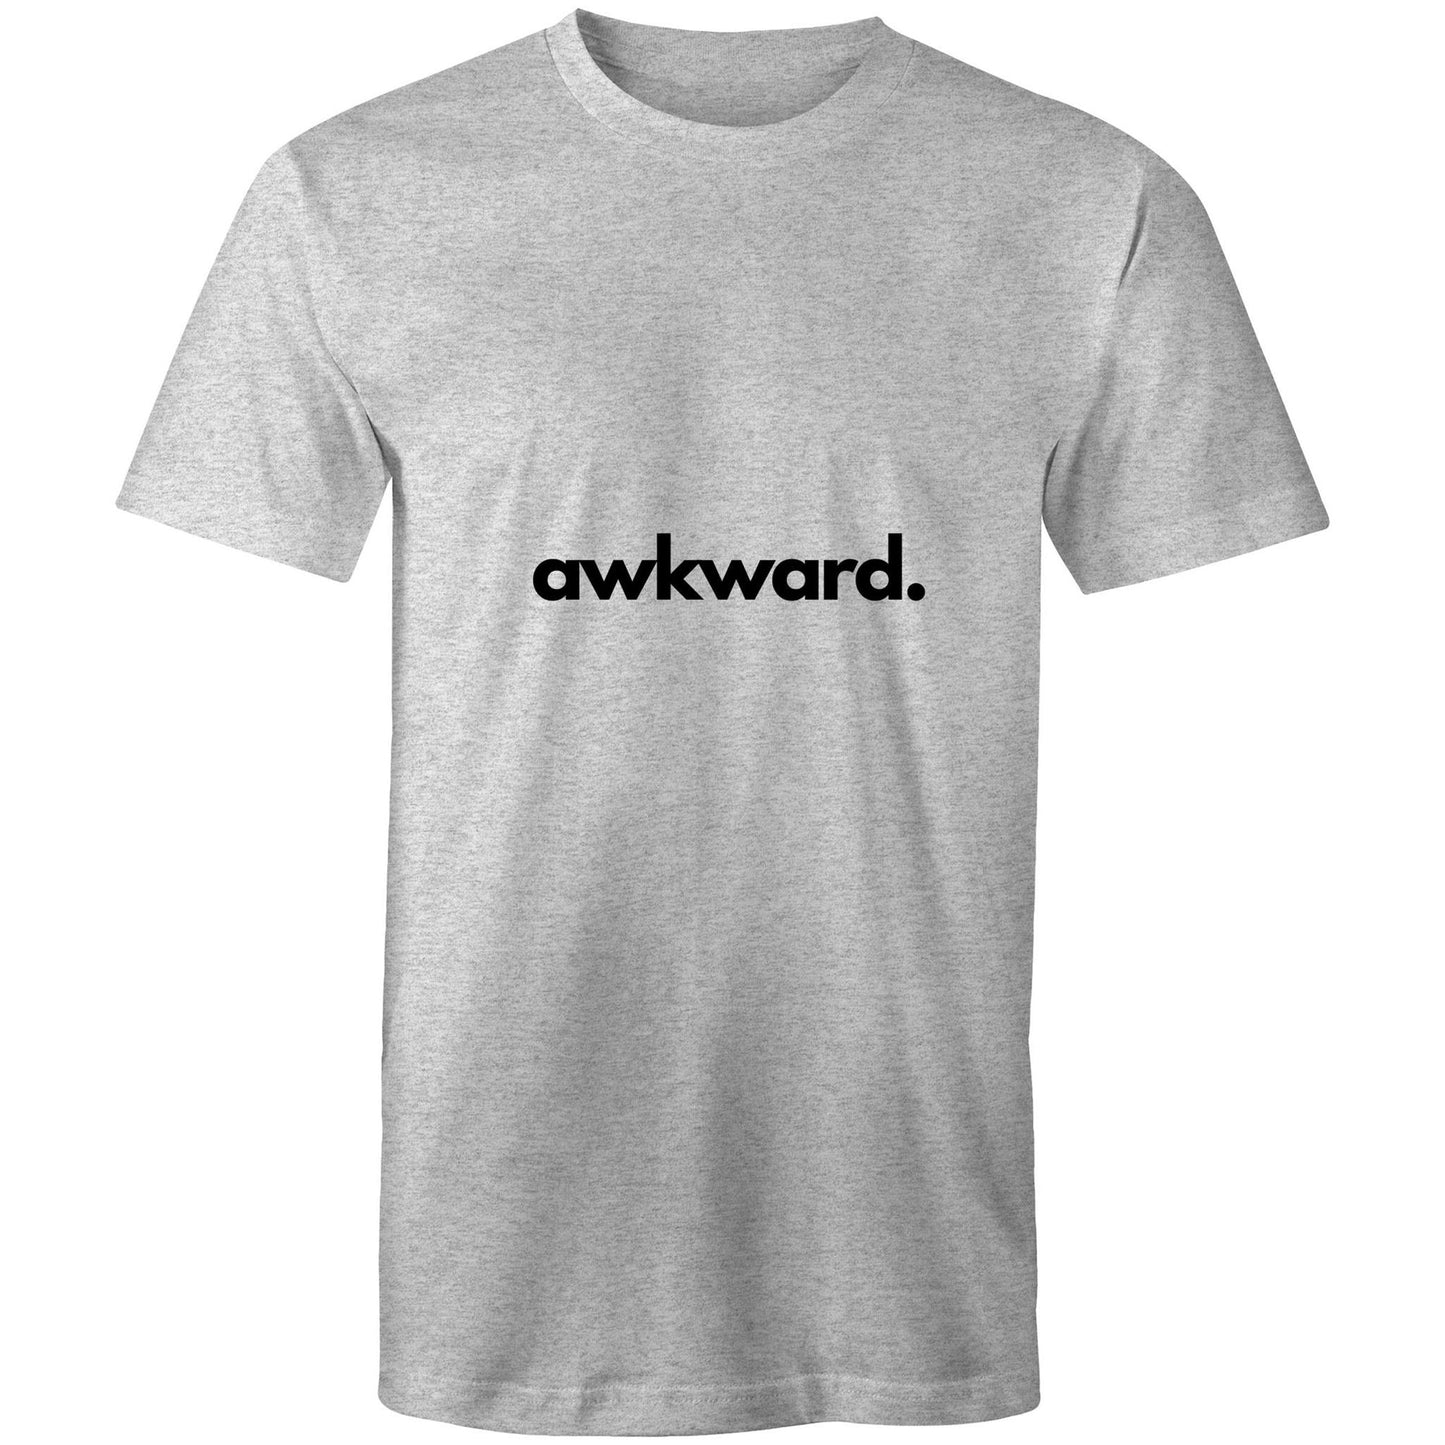 awkward T-Shirt